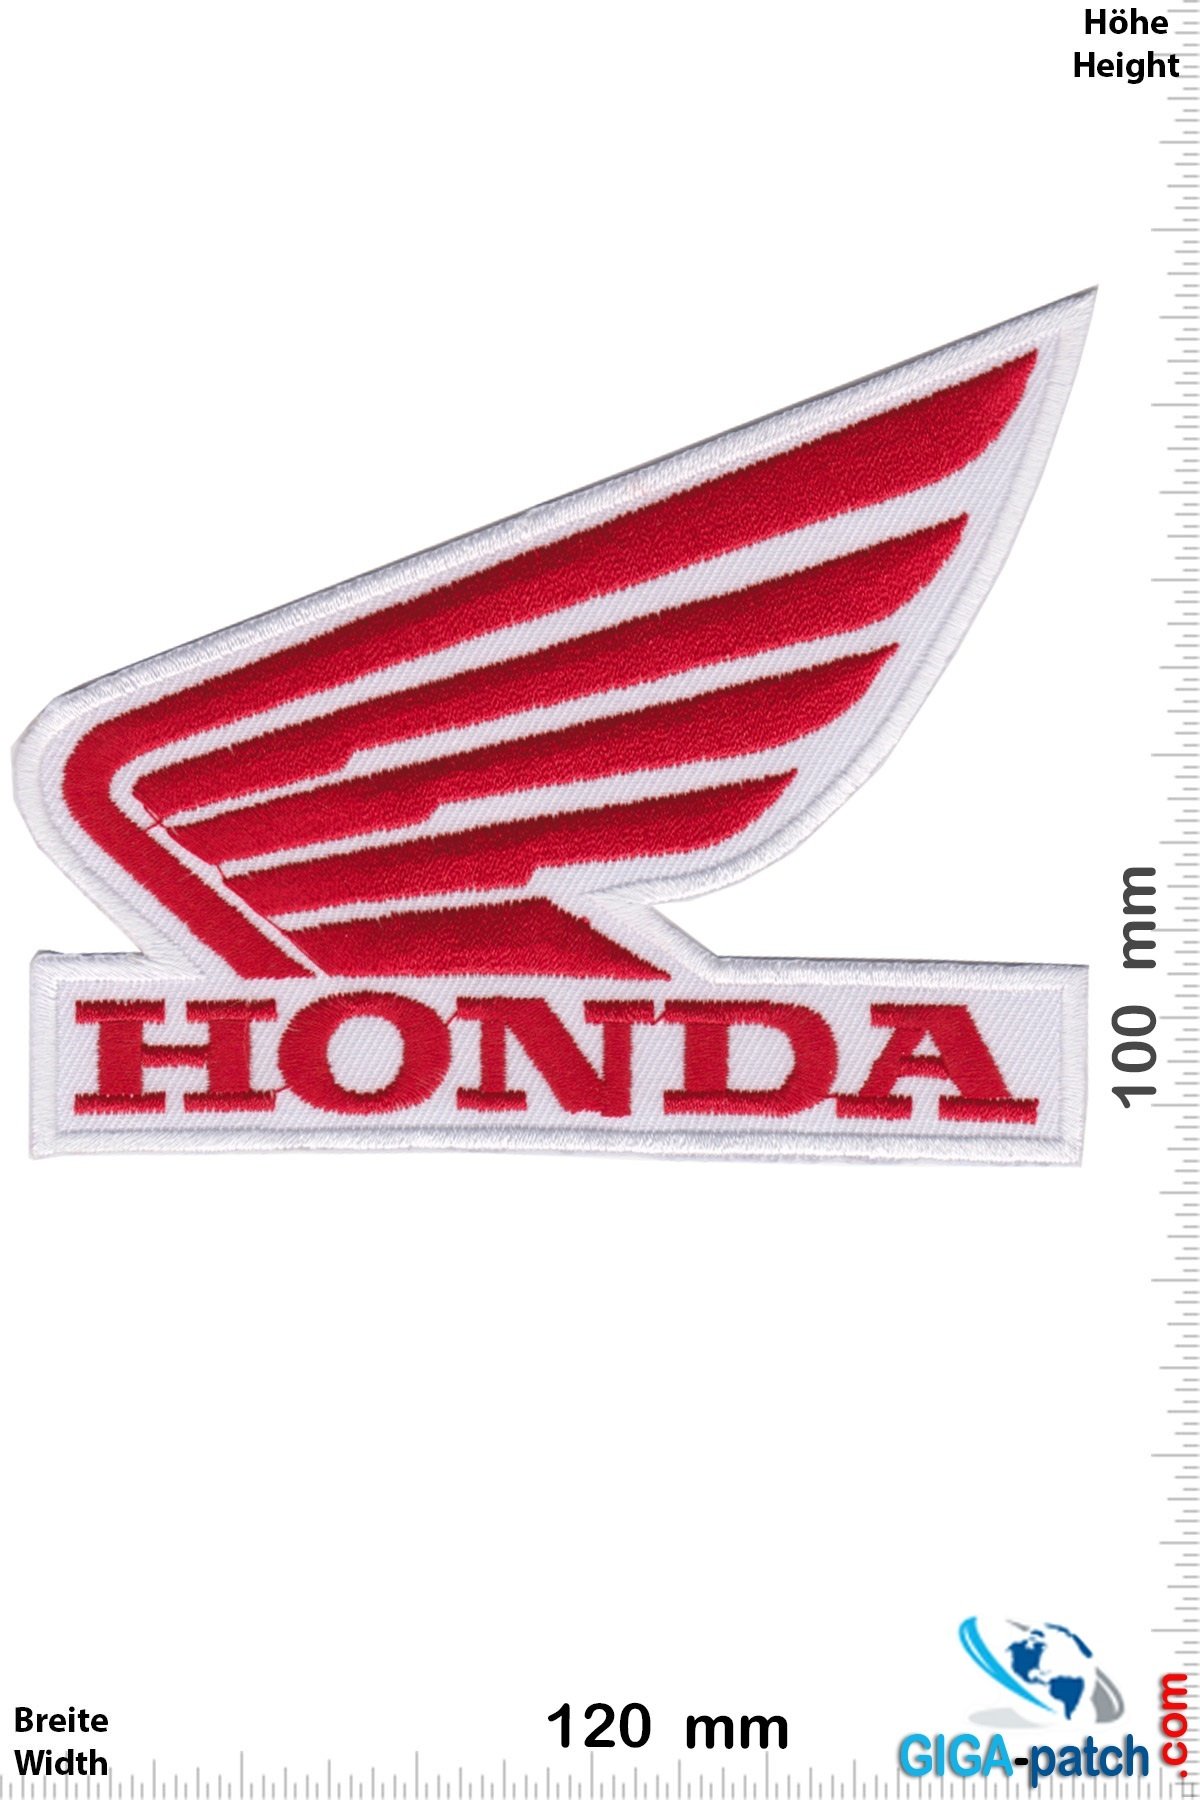 Honda Honda - Wing - red white - big